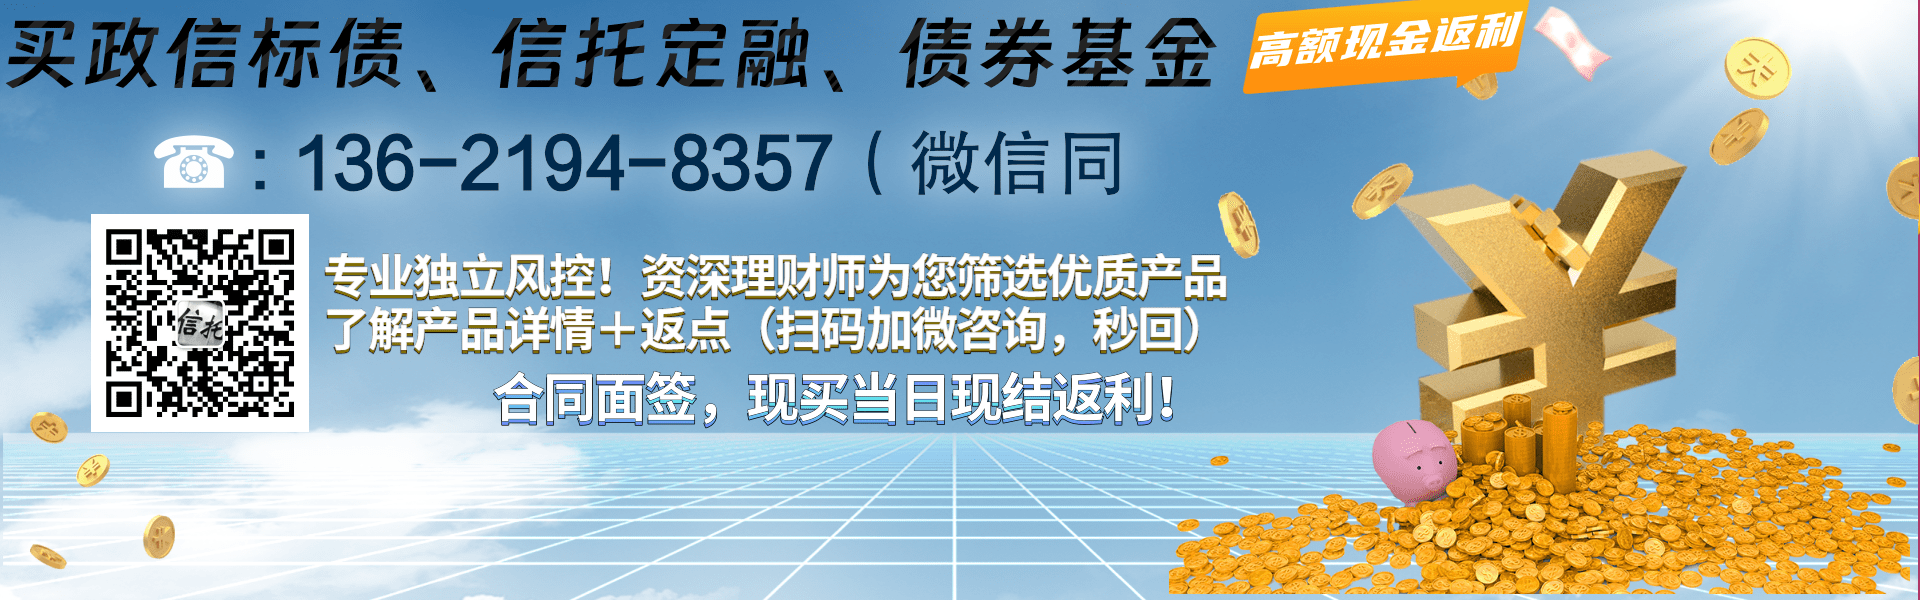 天津市宁河区兴宁建设投资2023年财产权信托收益产品